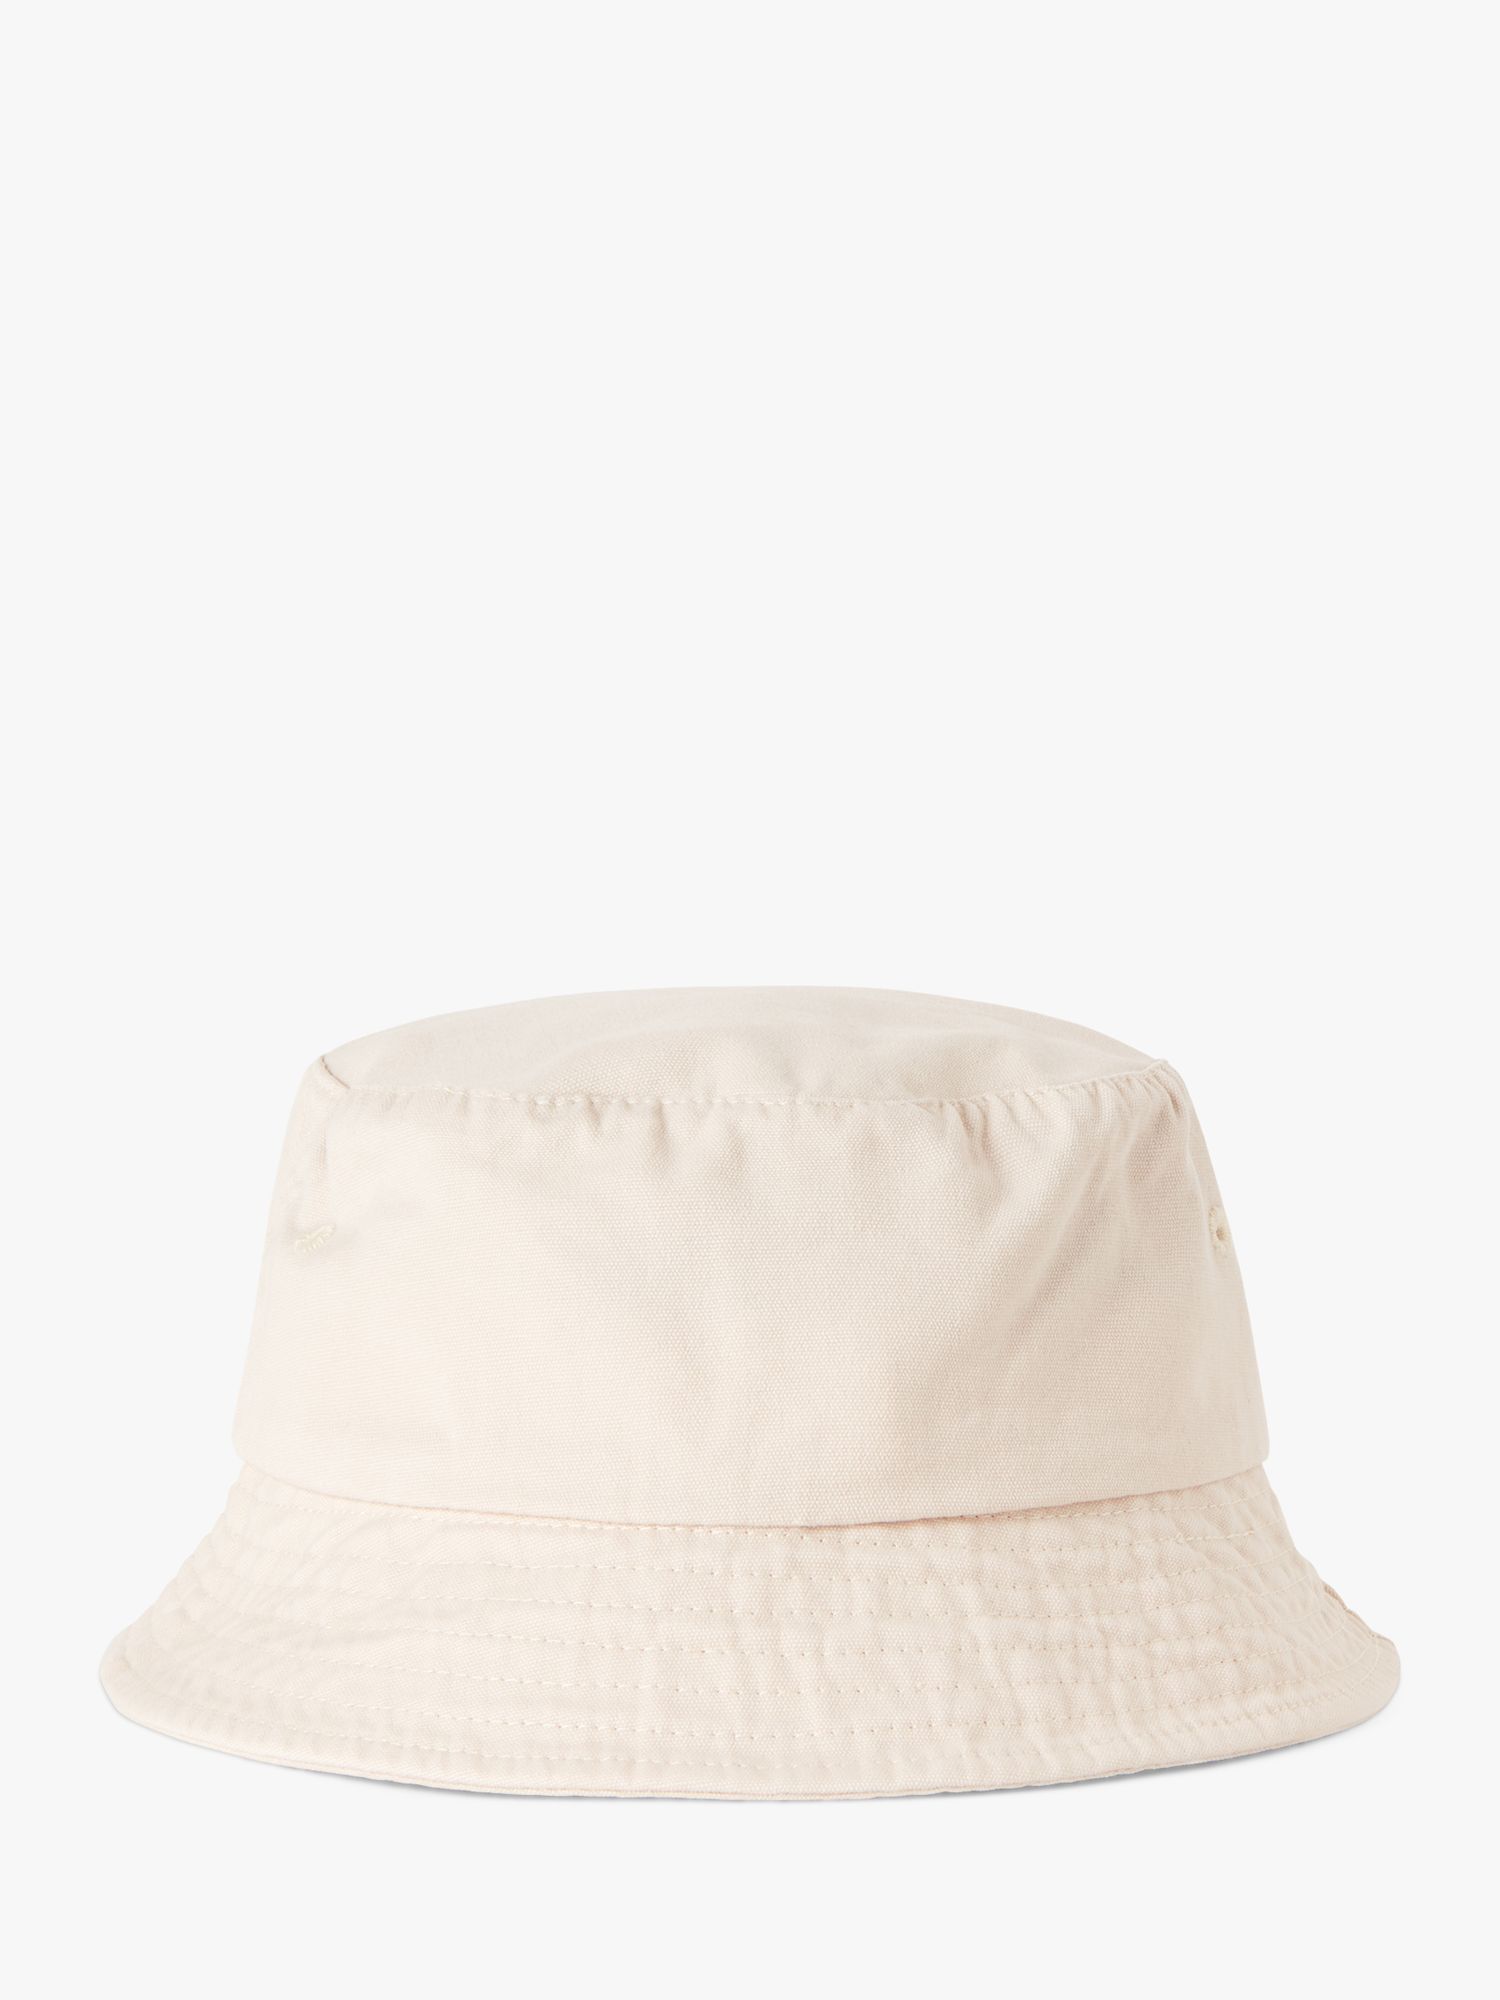 Benetton Kids' Logo Embroidered Bucket Hat, Cream, S